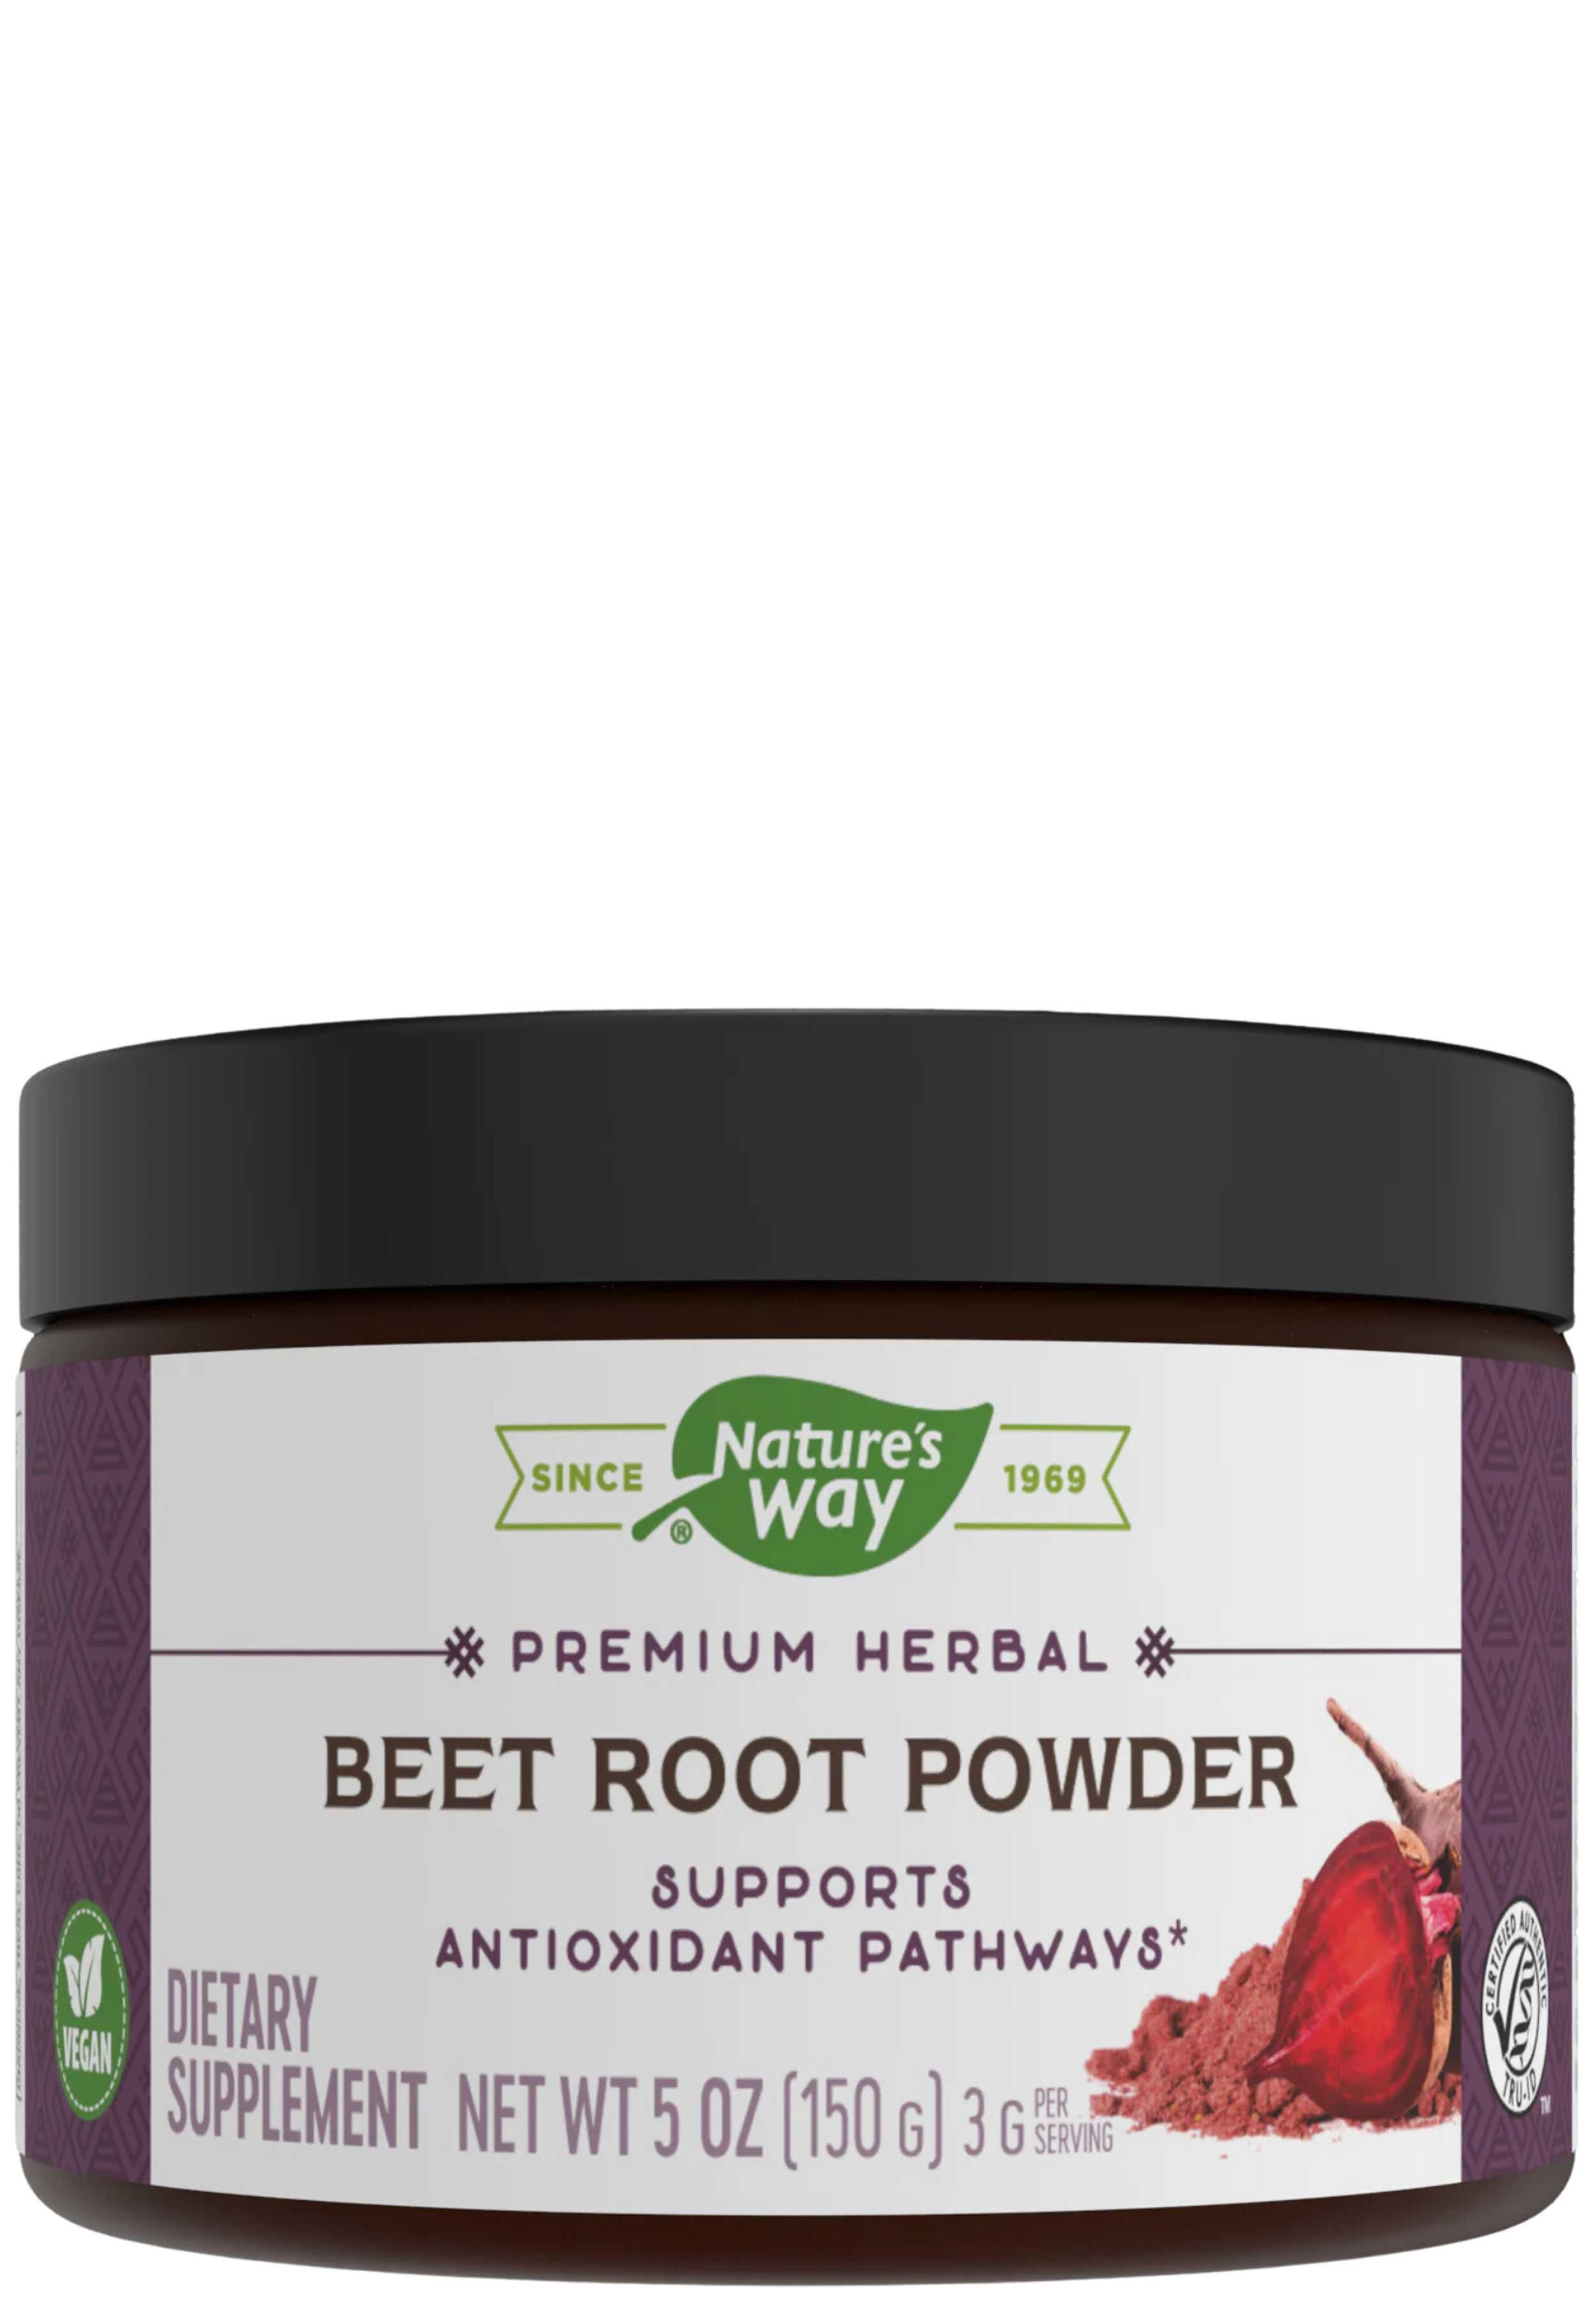 Nature's Way Beet Root Powder